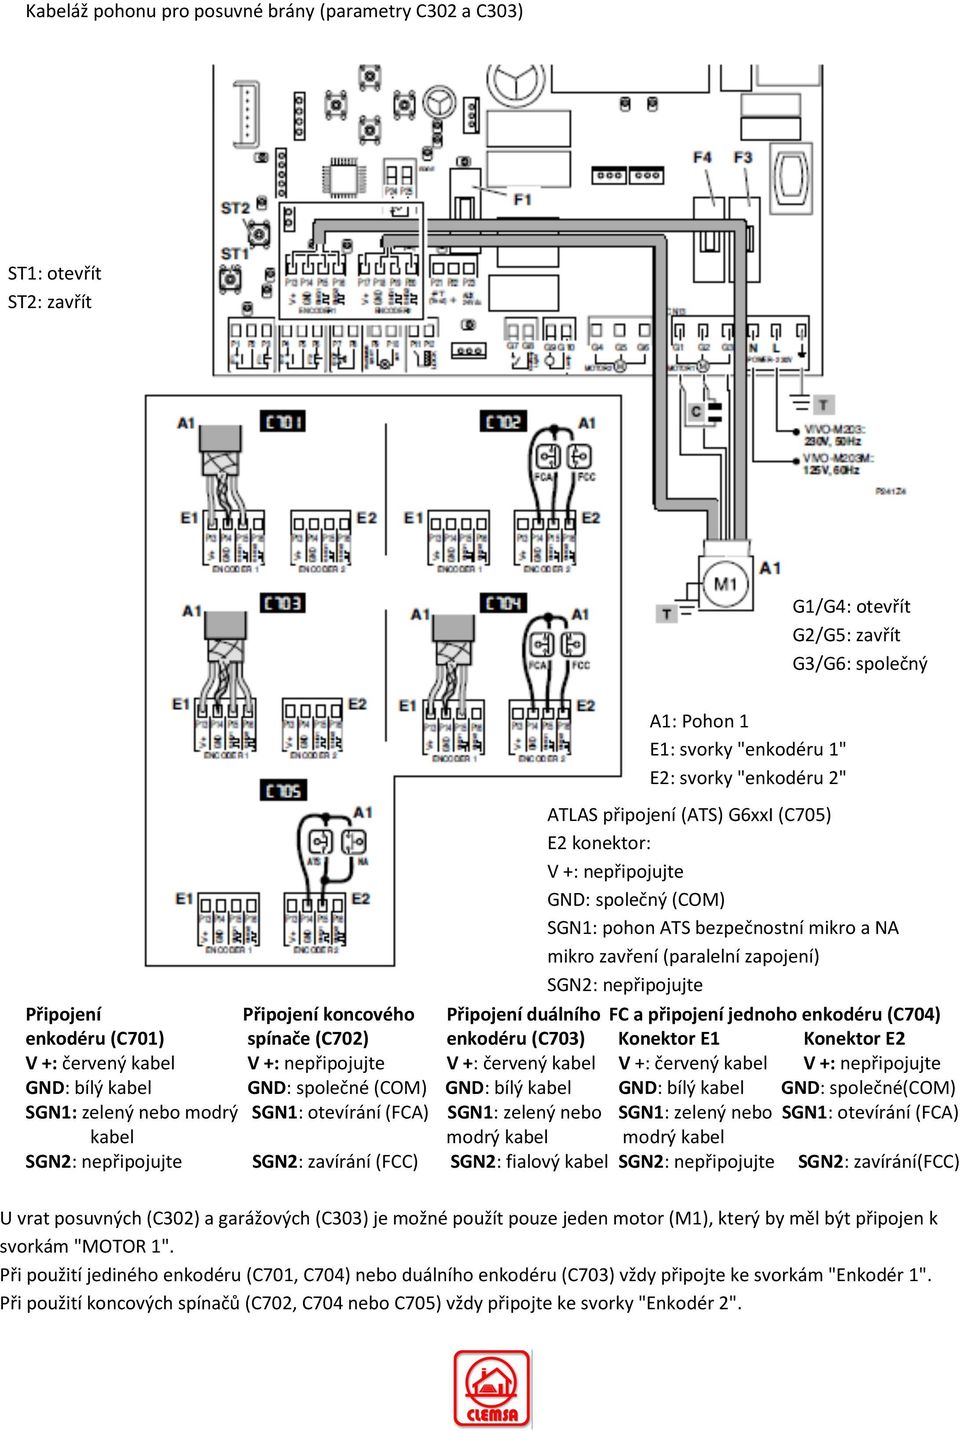 koncového Připojení duálního FC a připojení jednoho enkodéru (C704) enkodéru (C701) spínače (C702) enkodéru (C703) Konektor E1 Konektor E2 V +: červený kabel V +: nepřipojujte V +: červený kabel V +: